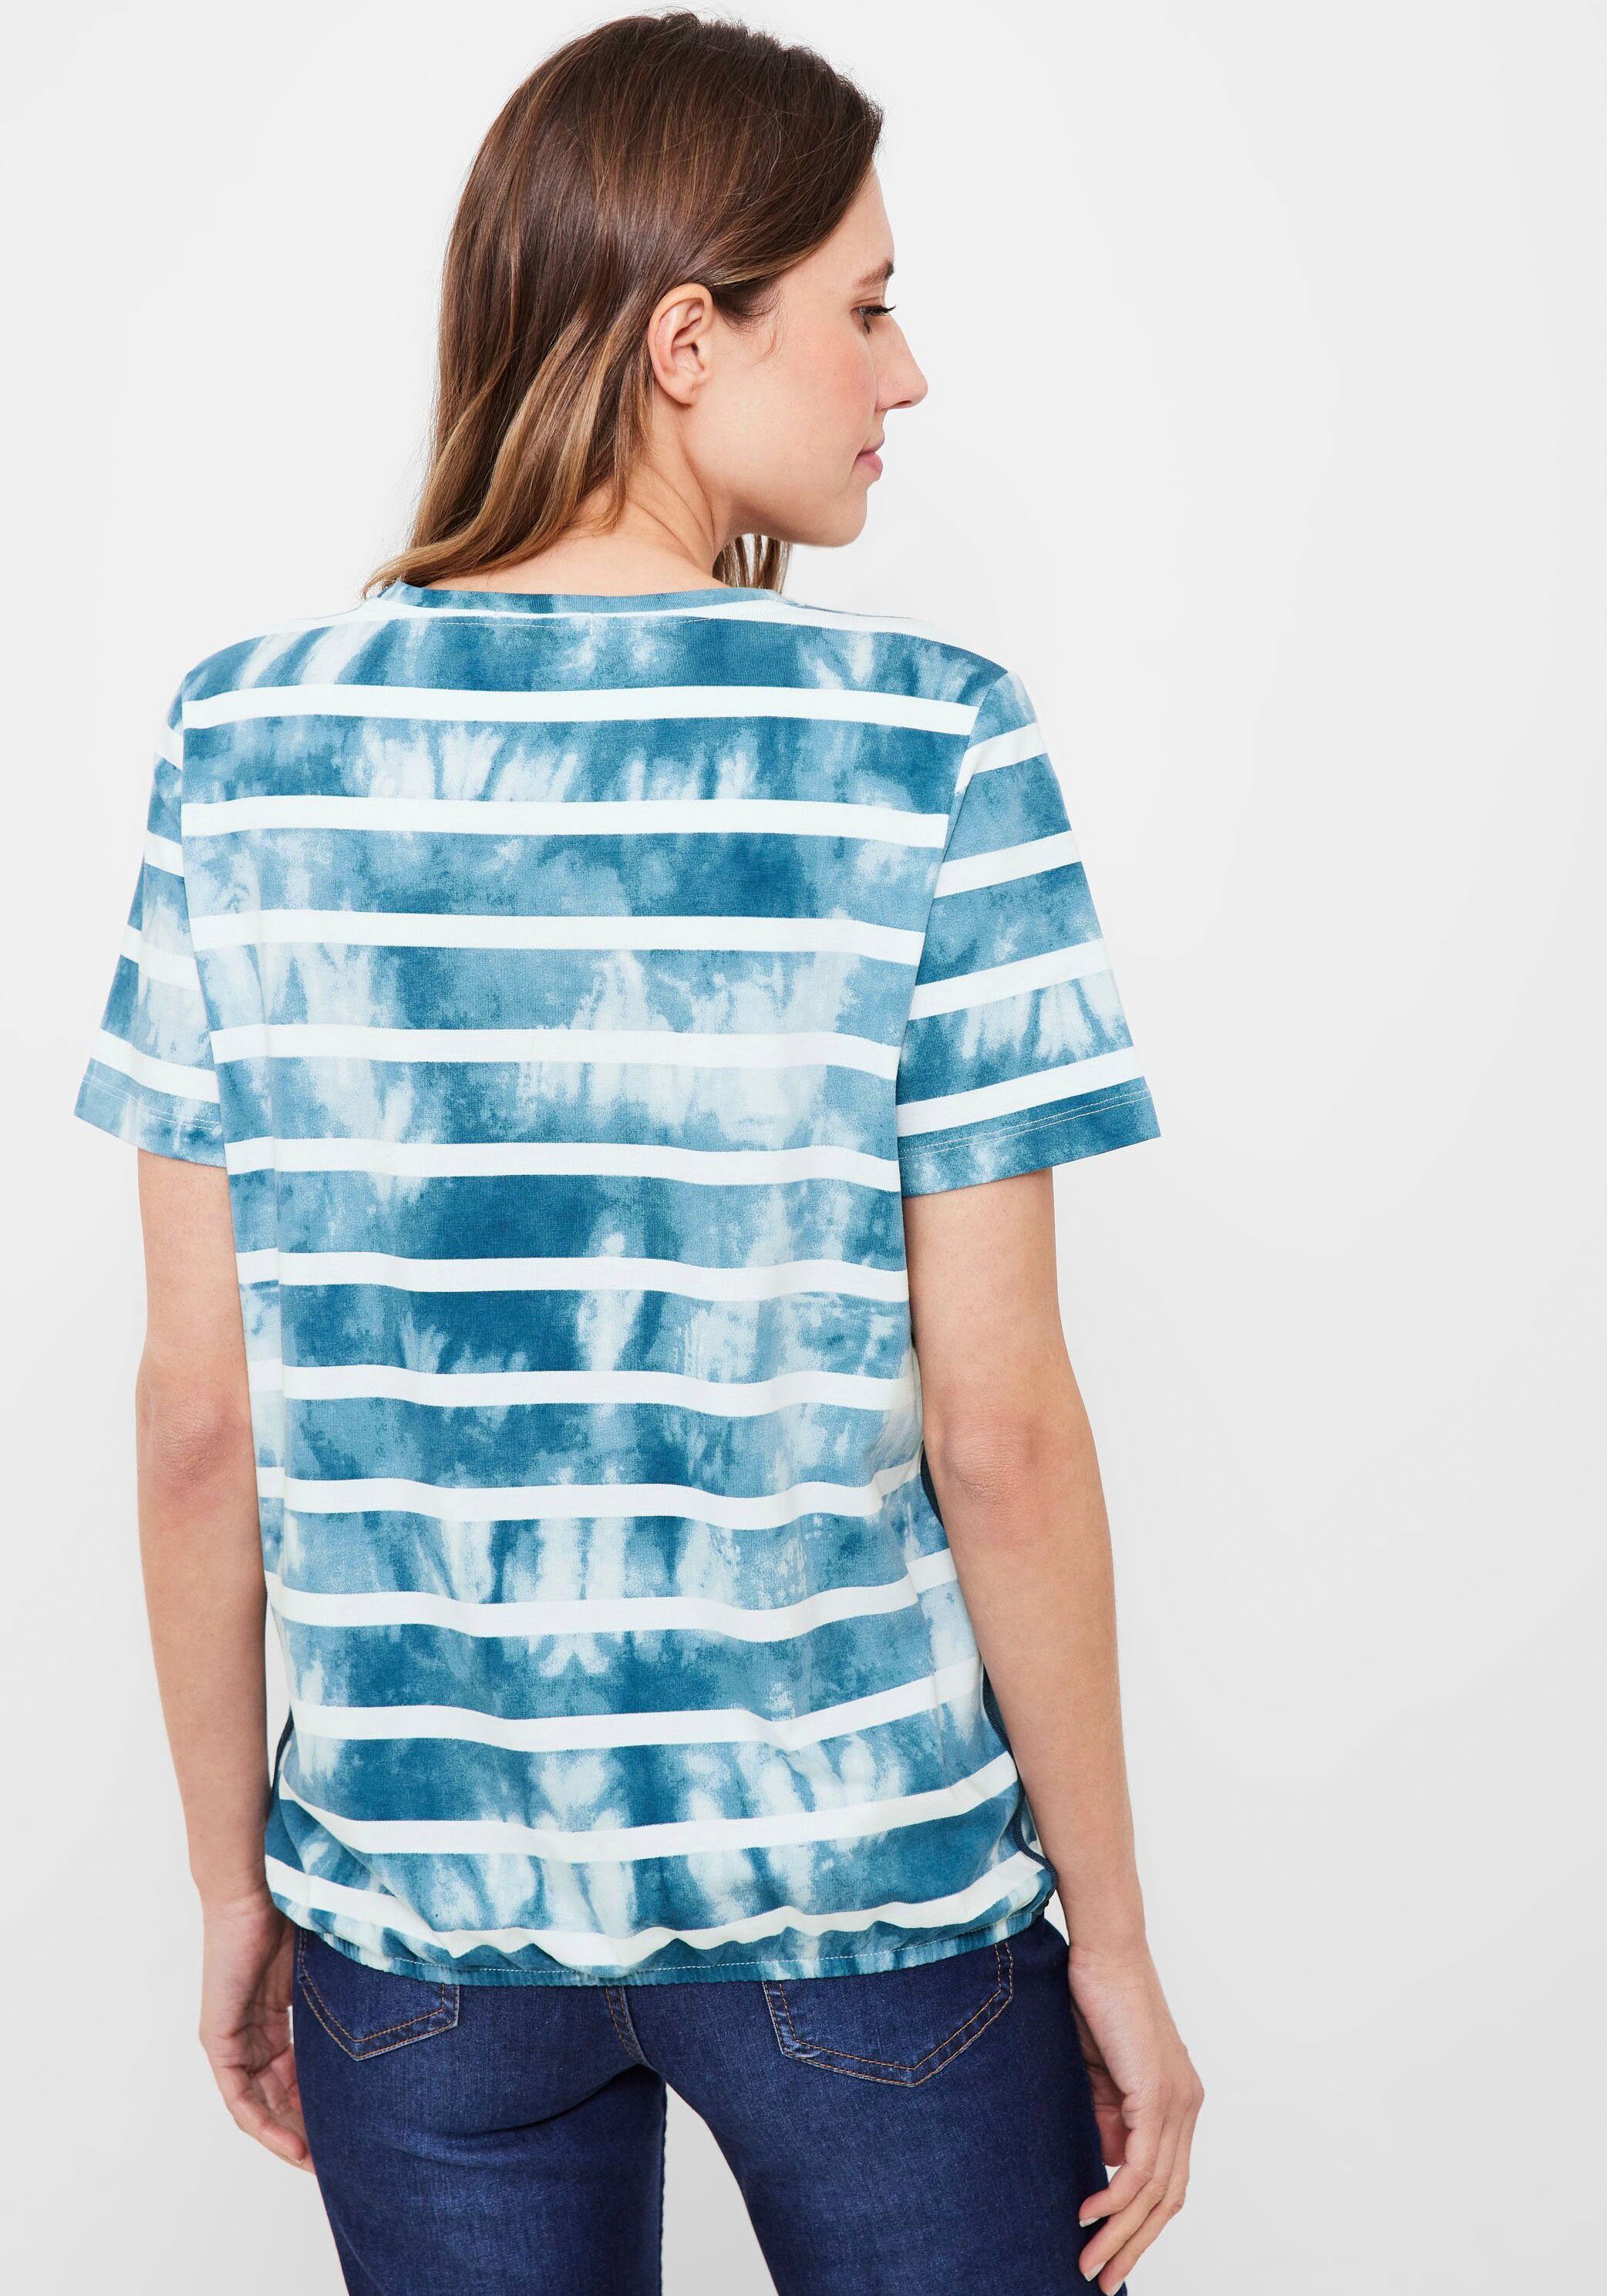 Cecil Print-Shirt mit Paillettenverzierung teal blue